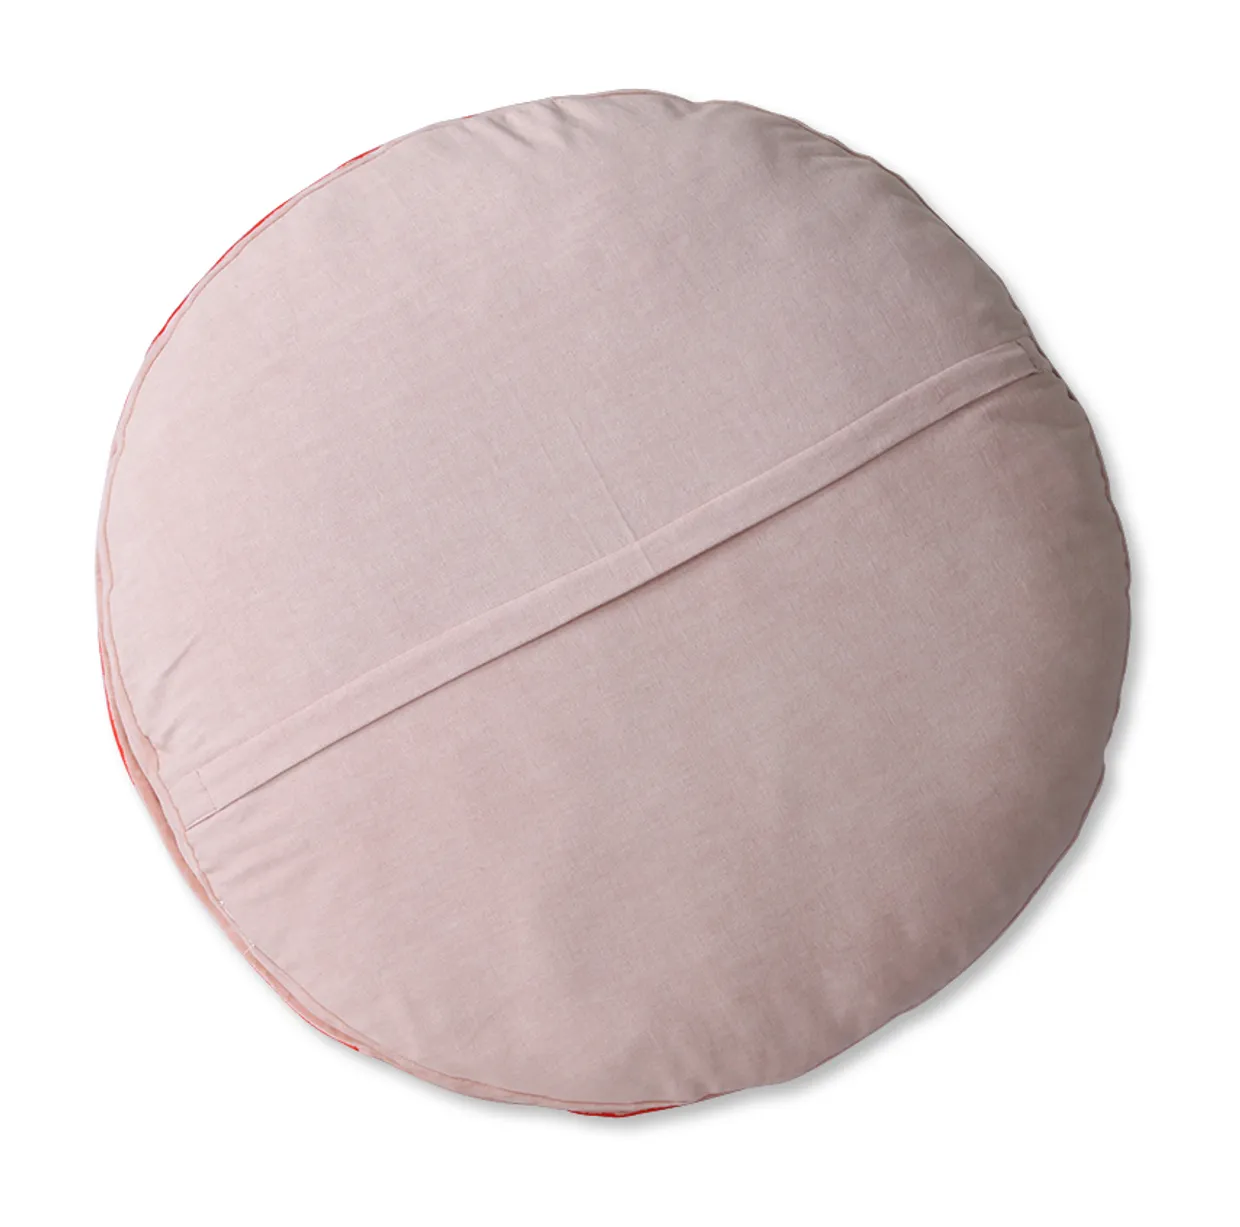 Striped velvet seat cushion round red/pink (ø60)